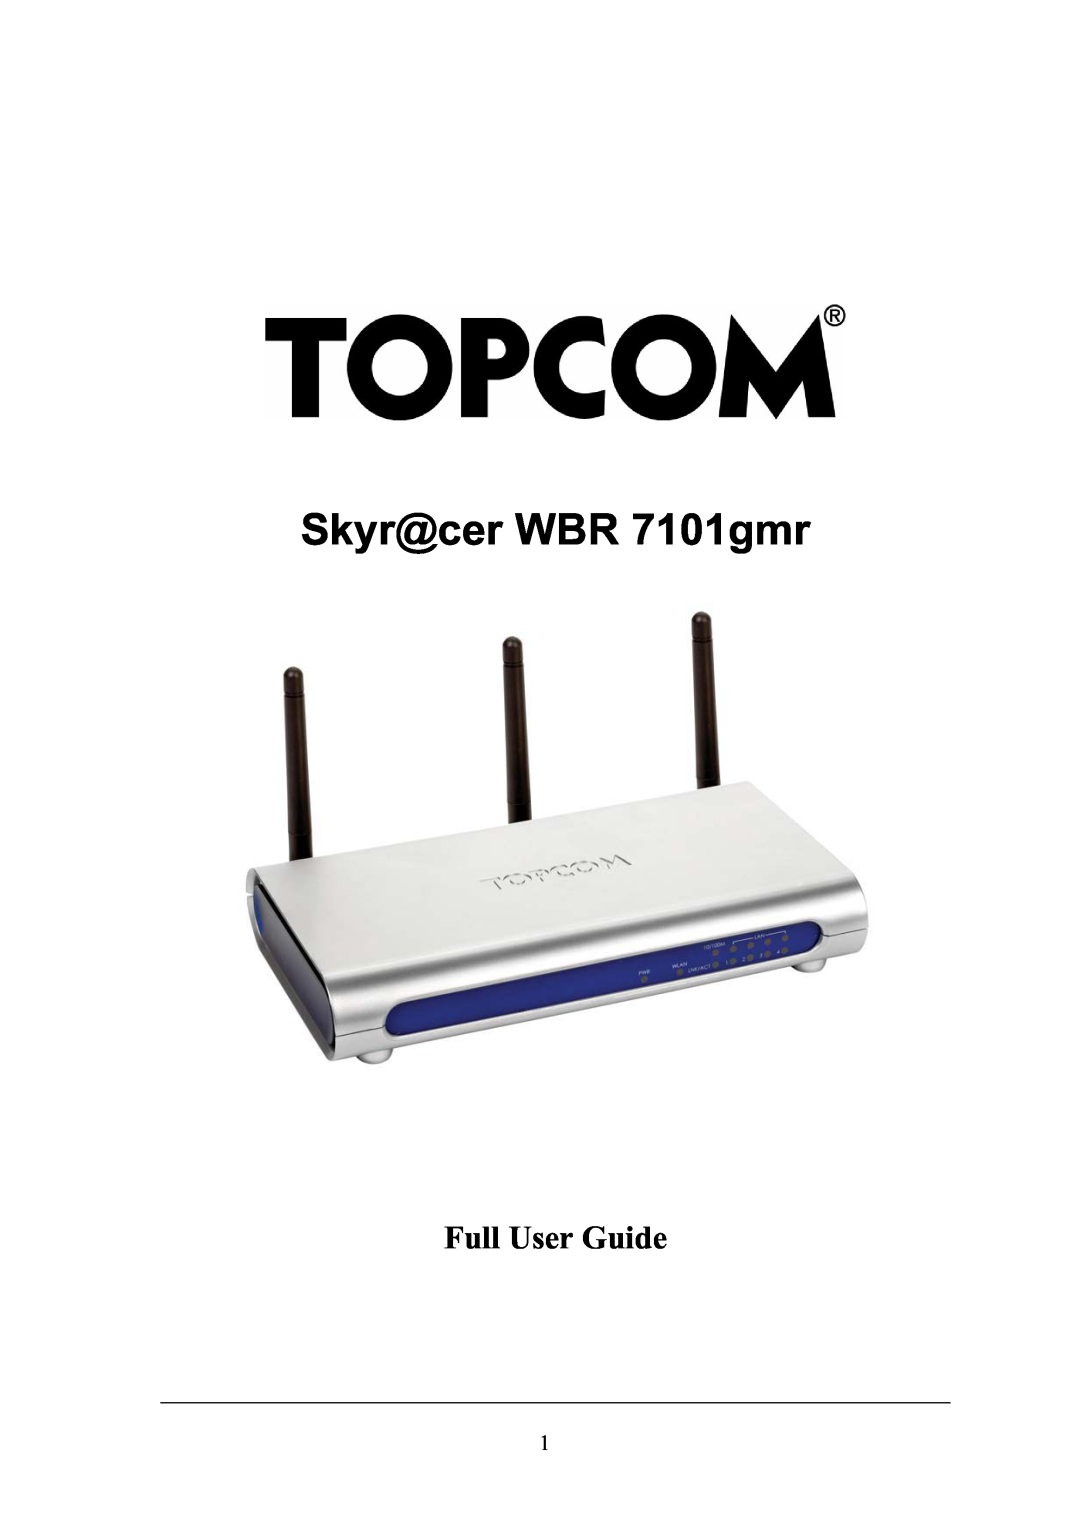 Topcom WBR 7101GMR manual Skyr@cer WBR 7101gmr, Full User Guide 